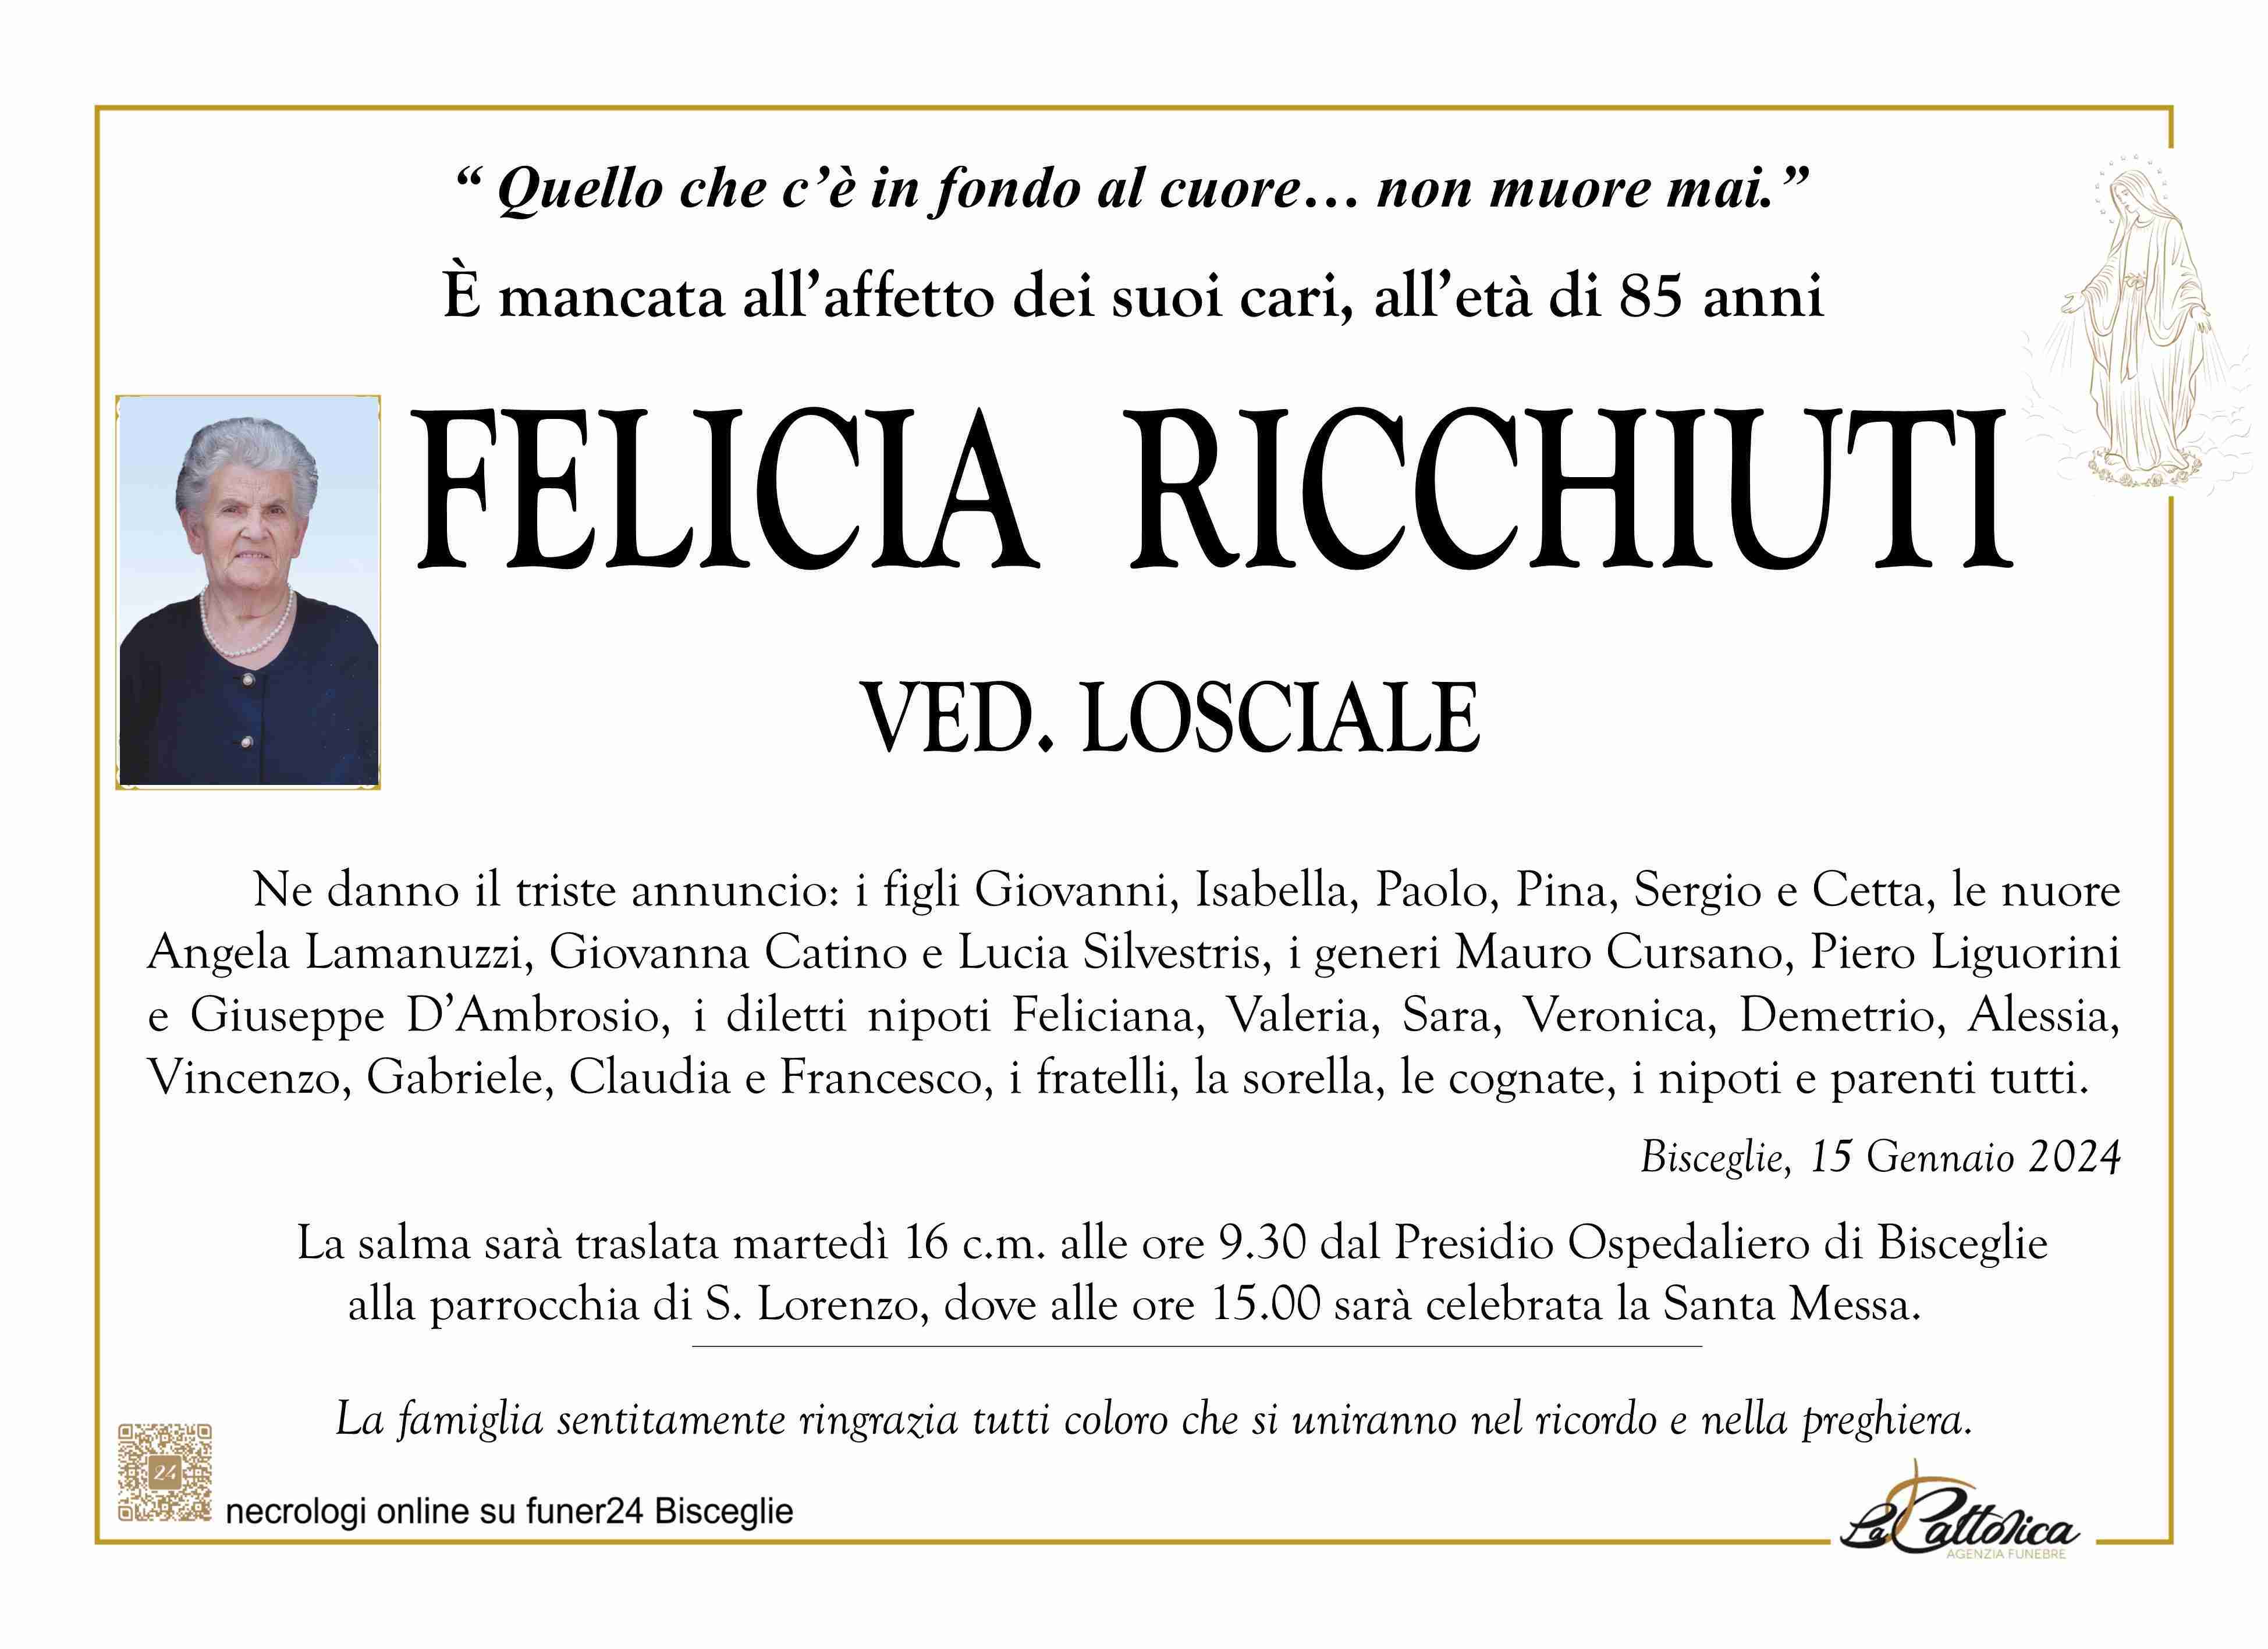 Felicia Ricchiuti